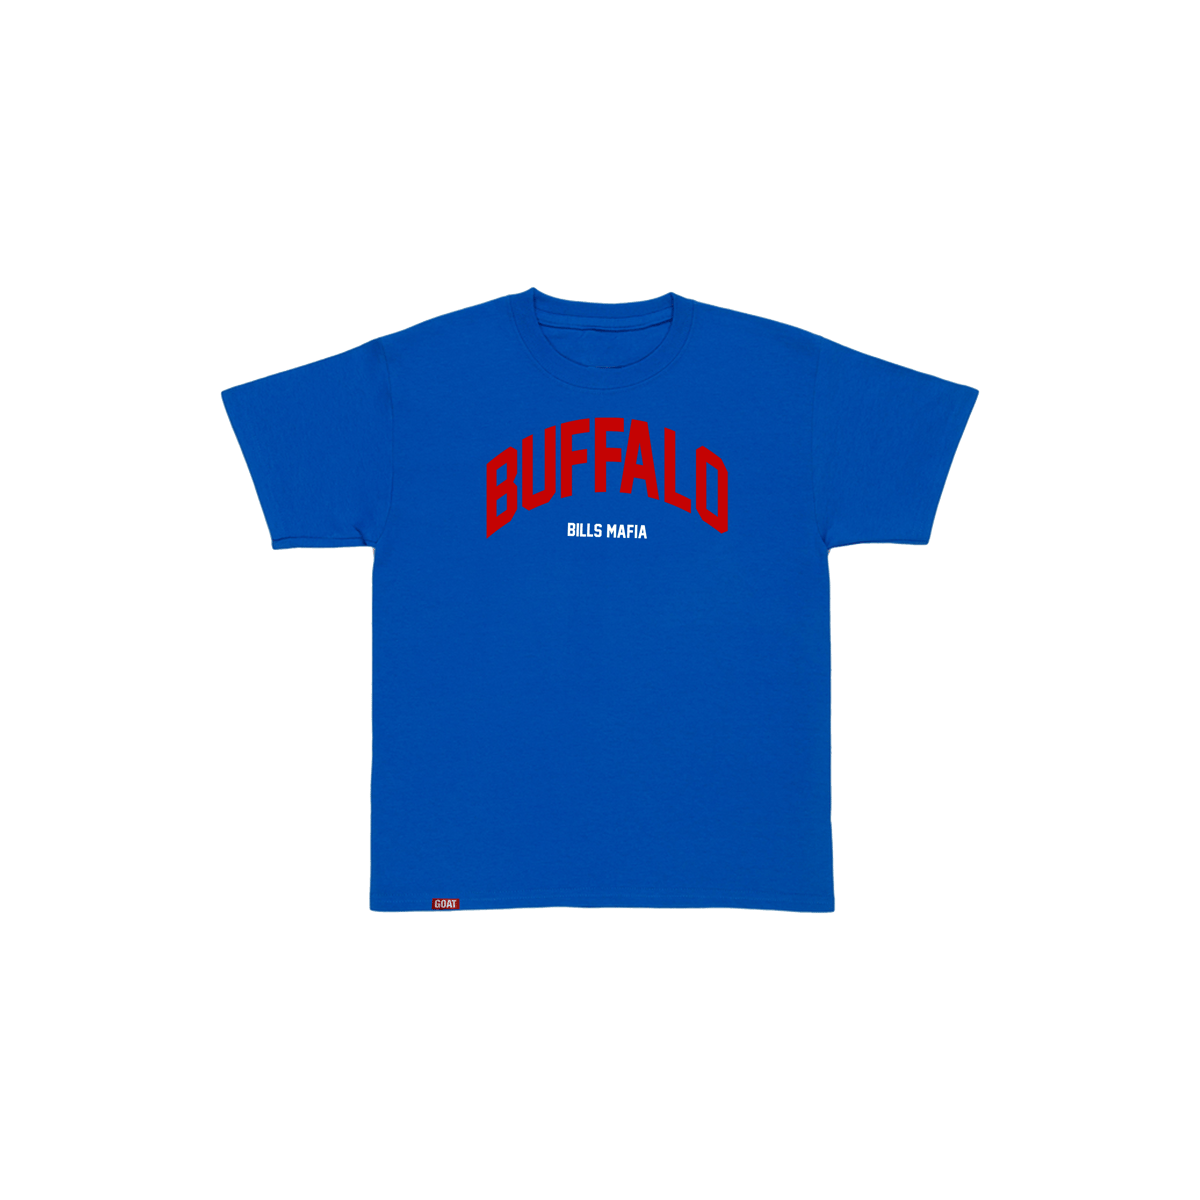 Exclusive "Bills Mafia" T-shirt